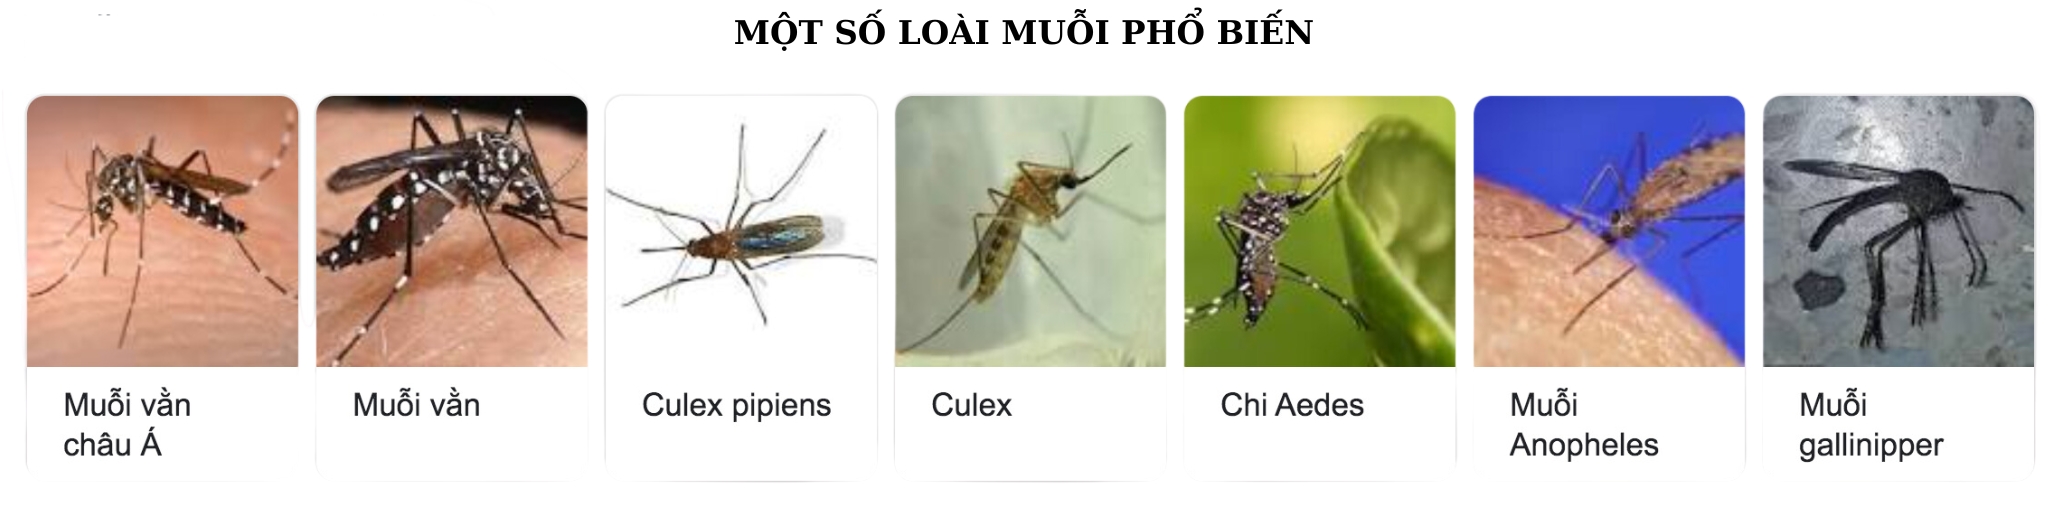 Một số loài muỗi phổ biến